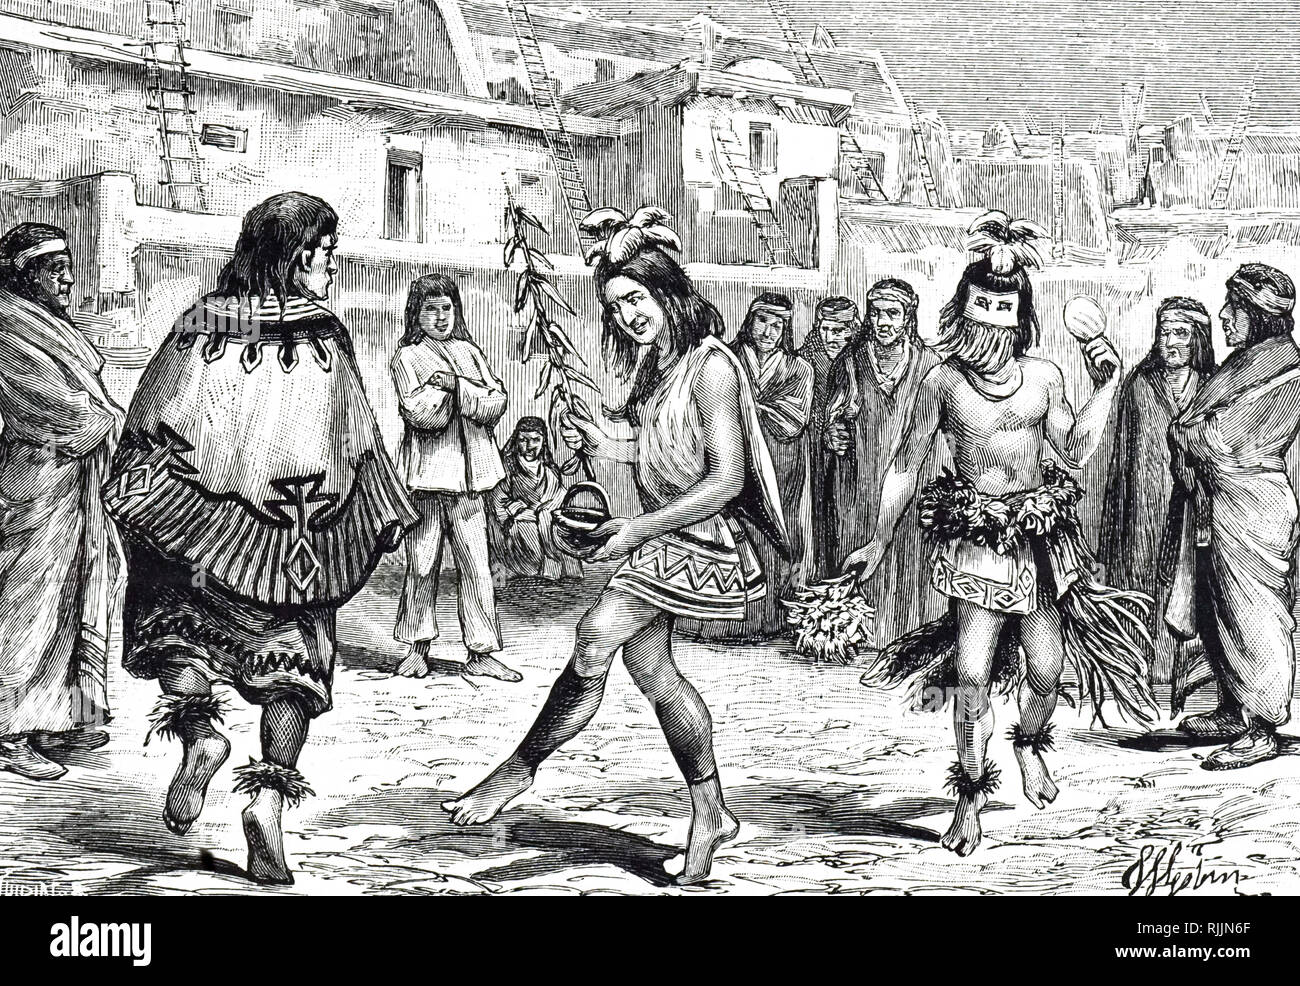 Eine Gravur, die Zuni Indianer (Pueblo Indianer von New Mexico) Durchführen  einer heiligen Tanz, vielleicht um den Regen zu bringen. In Kostümen und  Masken, die die Männer nachahmen Geister oder Götter namens